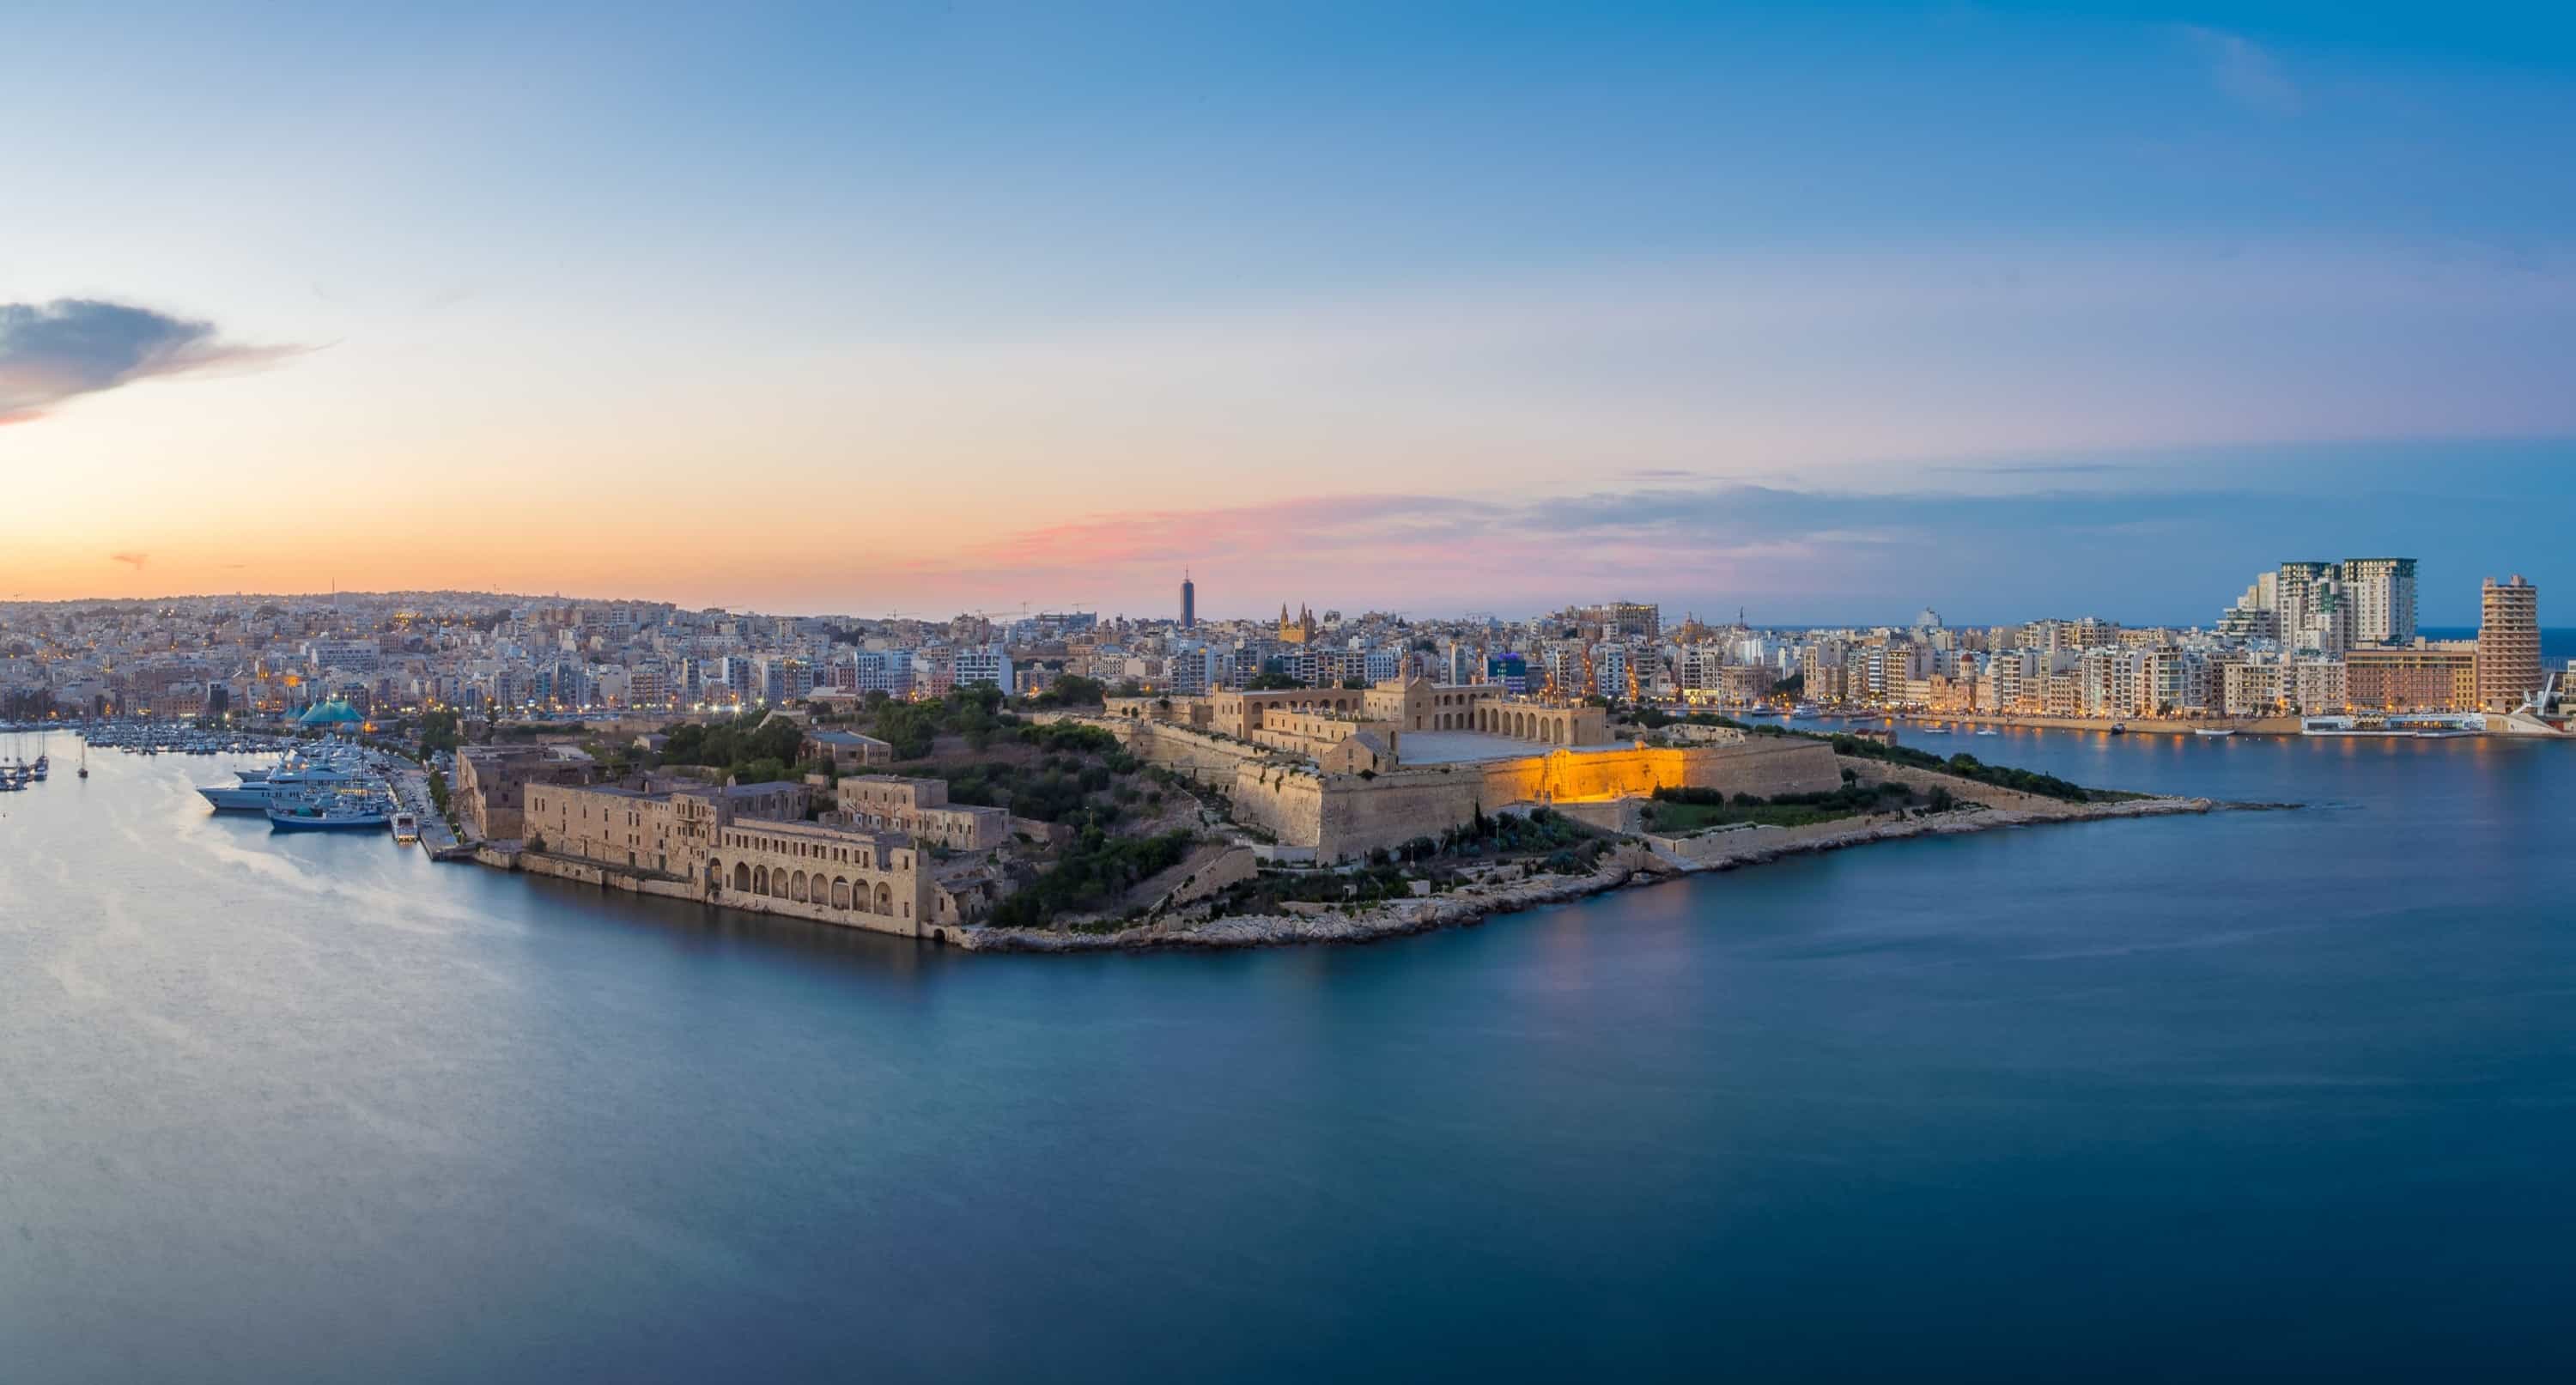 Malta View